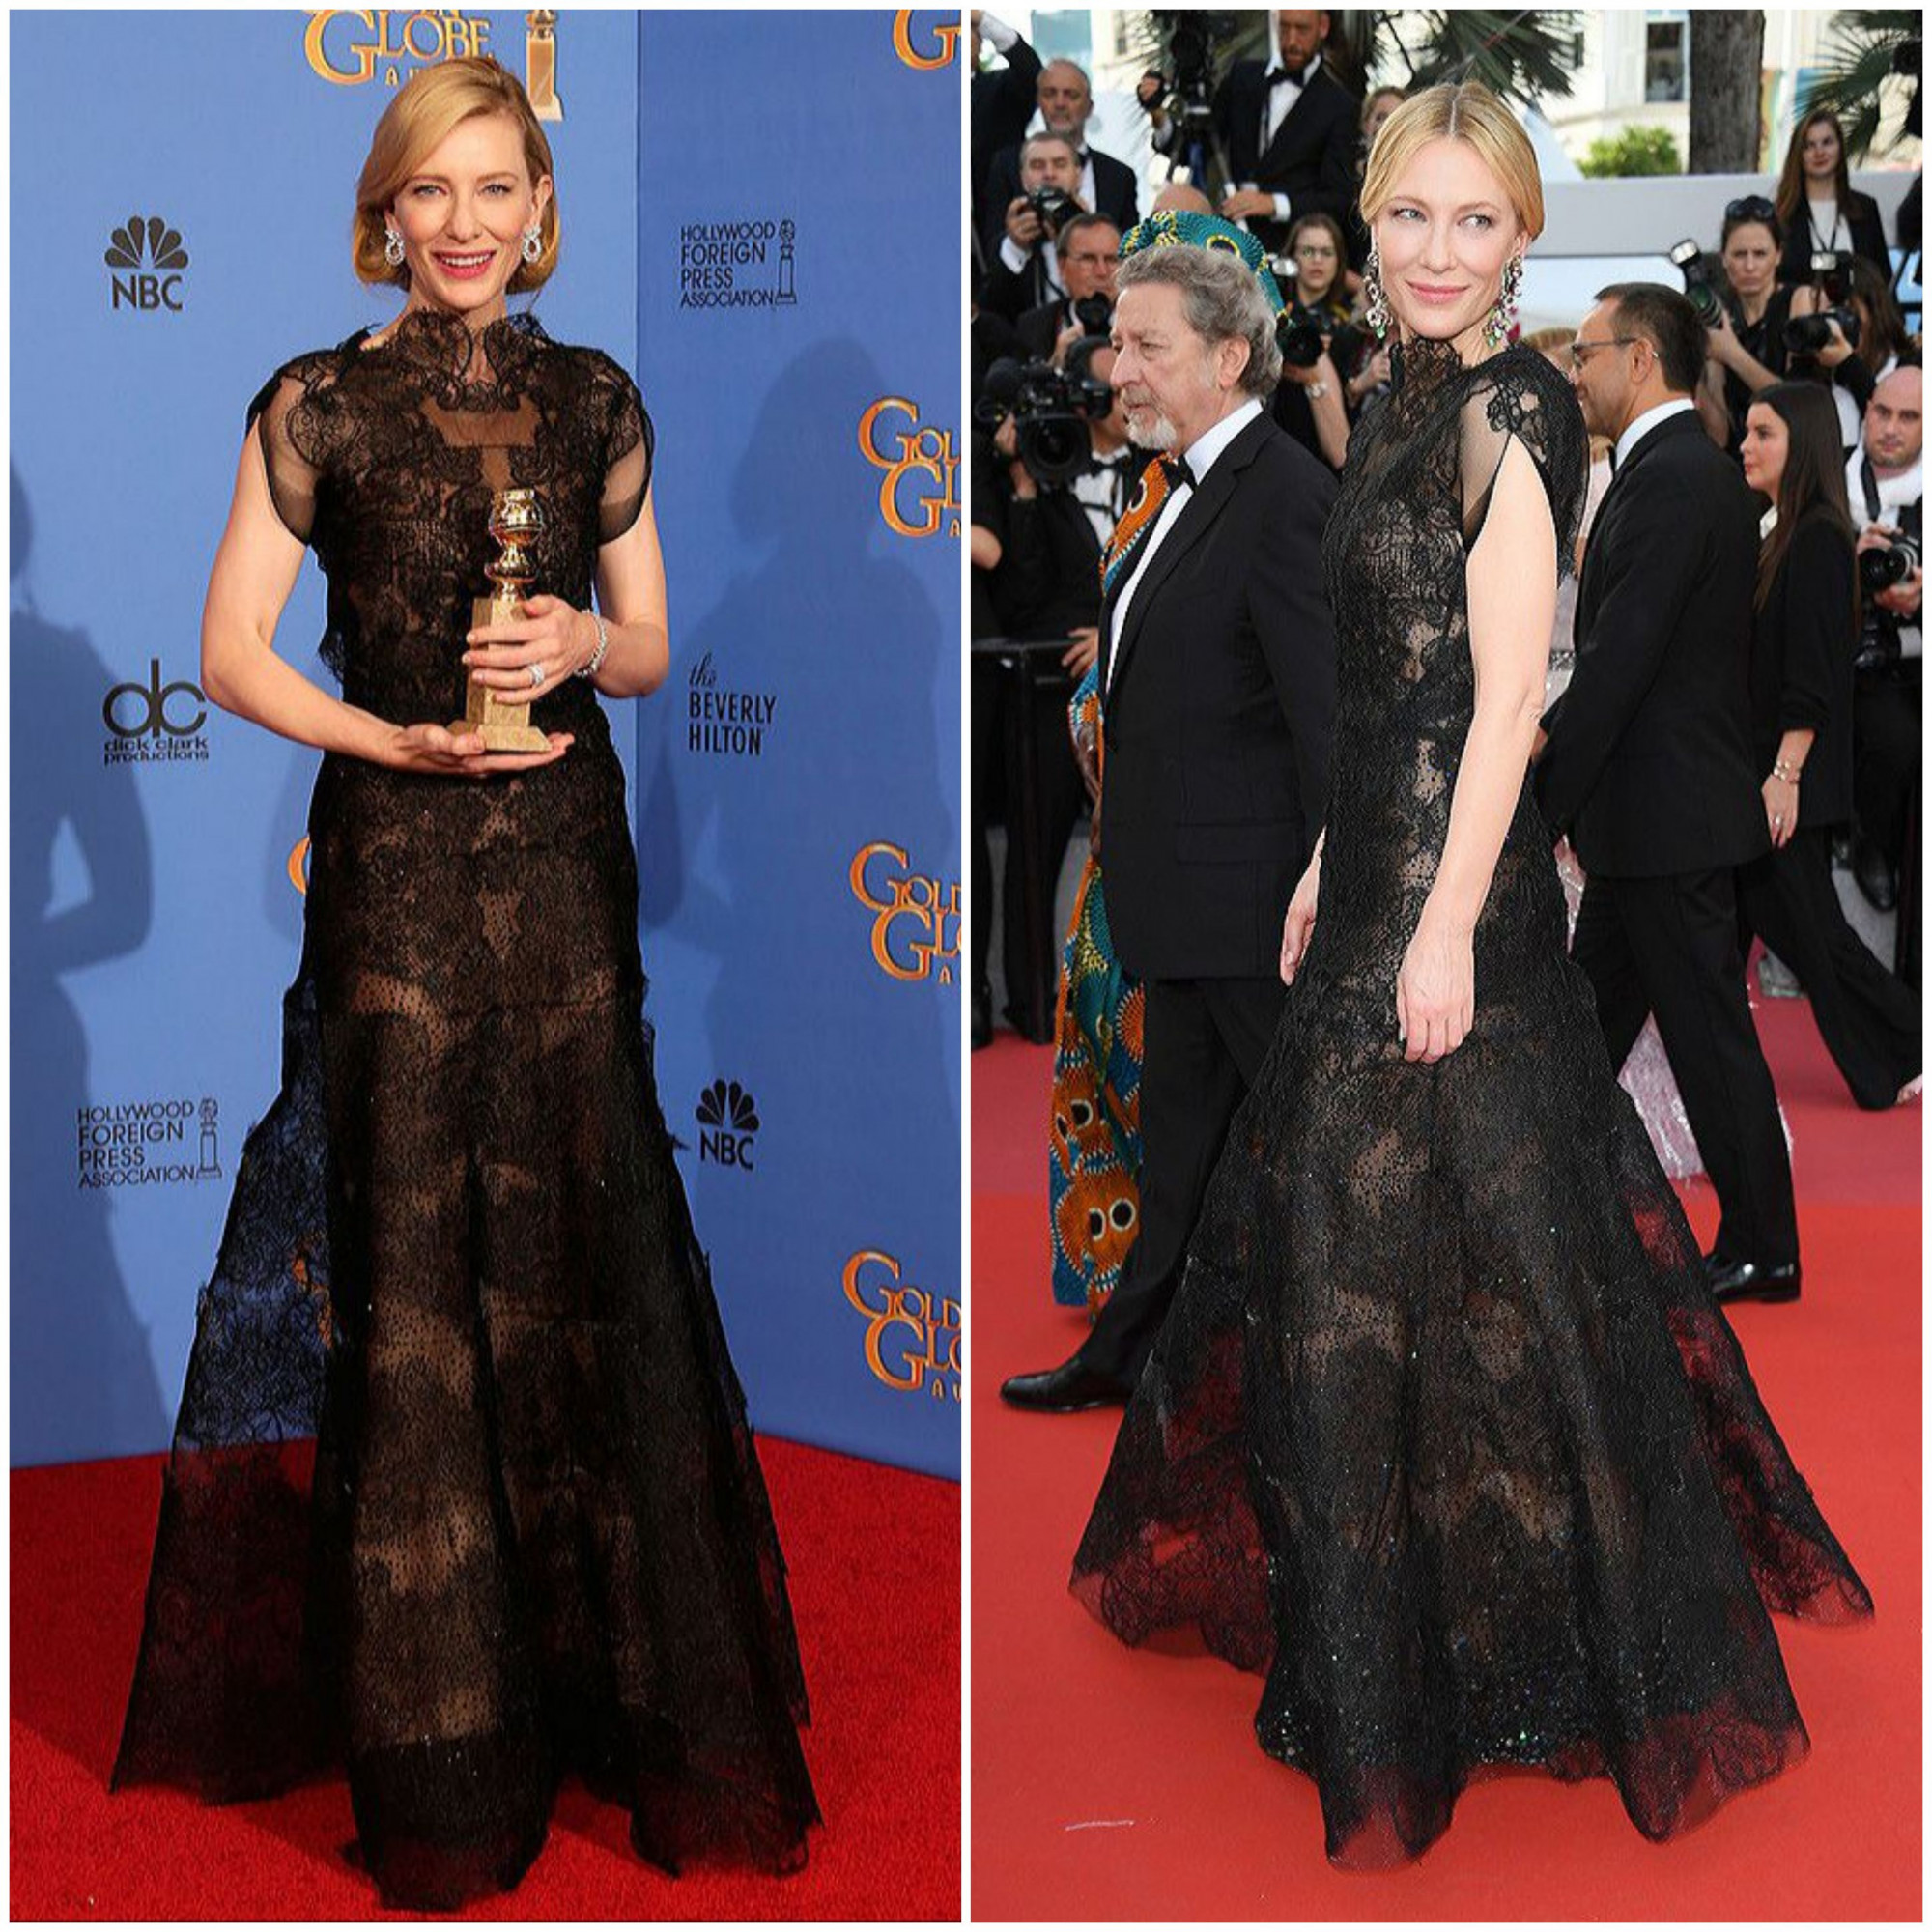 Trưởng ban giám khảo Liên hoan phim Cannes 2018 - nữ diễn viên Cate Blanchett tái sử dụng chiếc váy cũ hiệu Armani được cô mặc từ 4 năm trước. Với Cate Blanchett diện trang phục cũ cũng là cách bảo vệ môi trường, góp phần giảm thiểu rác thải từ ngành may mặc.